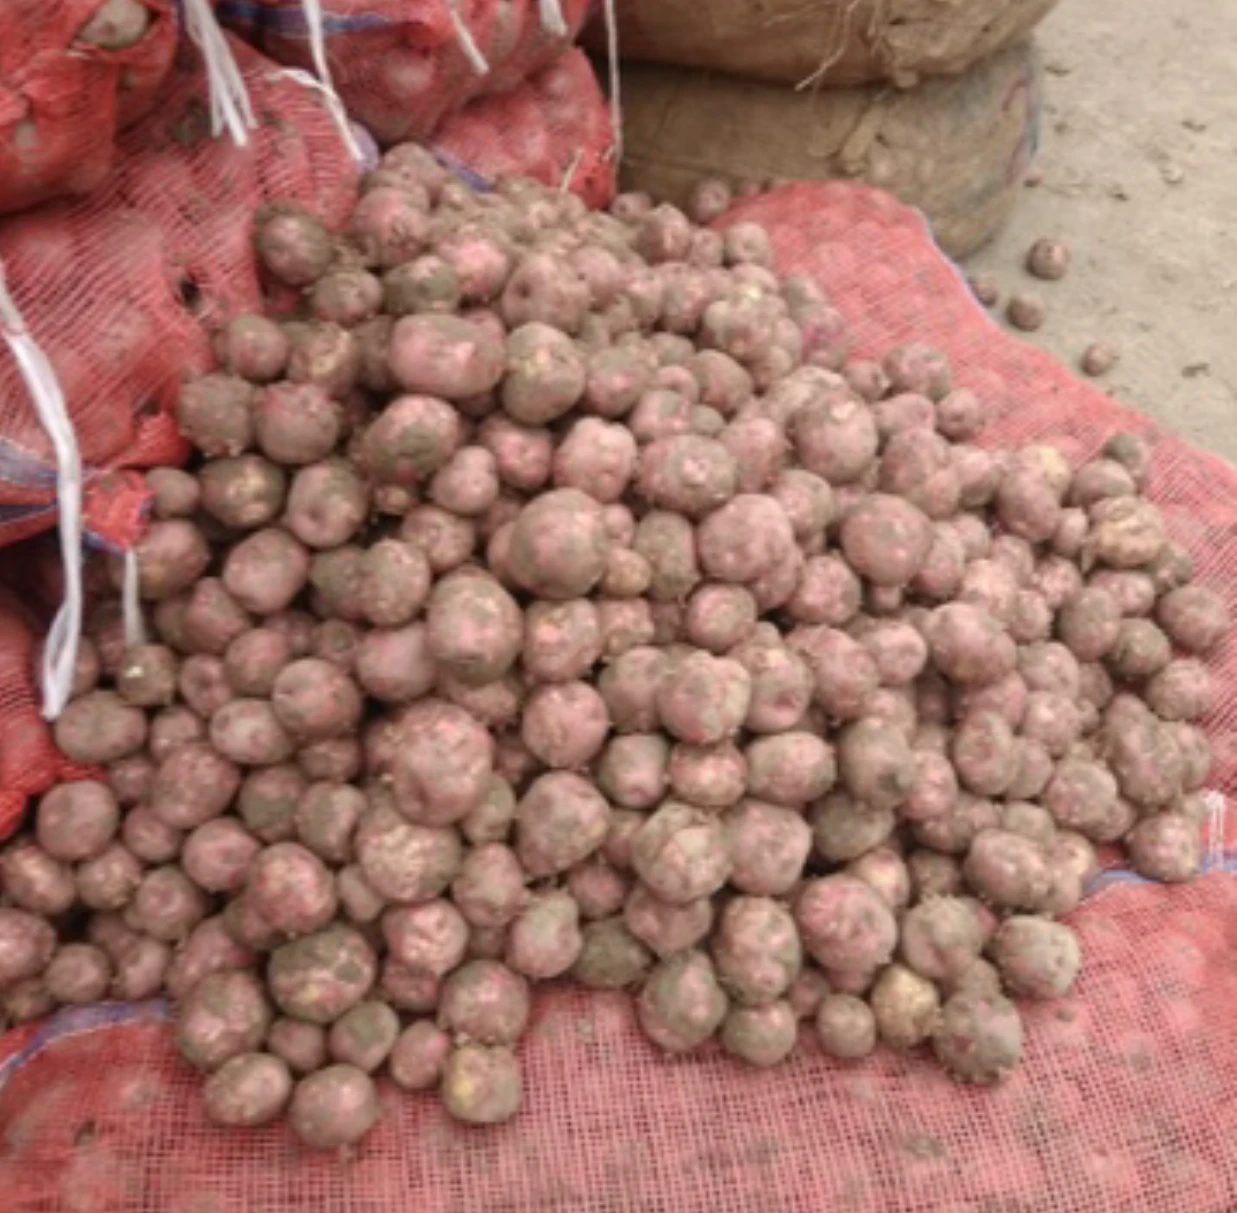 High quality organic Pakistani fresh potato